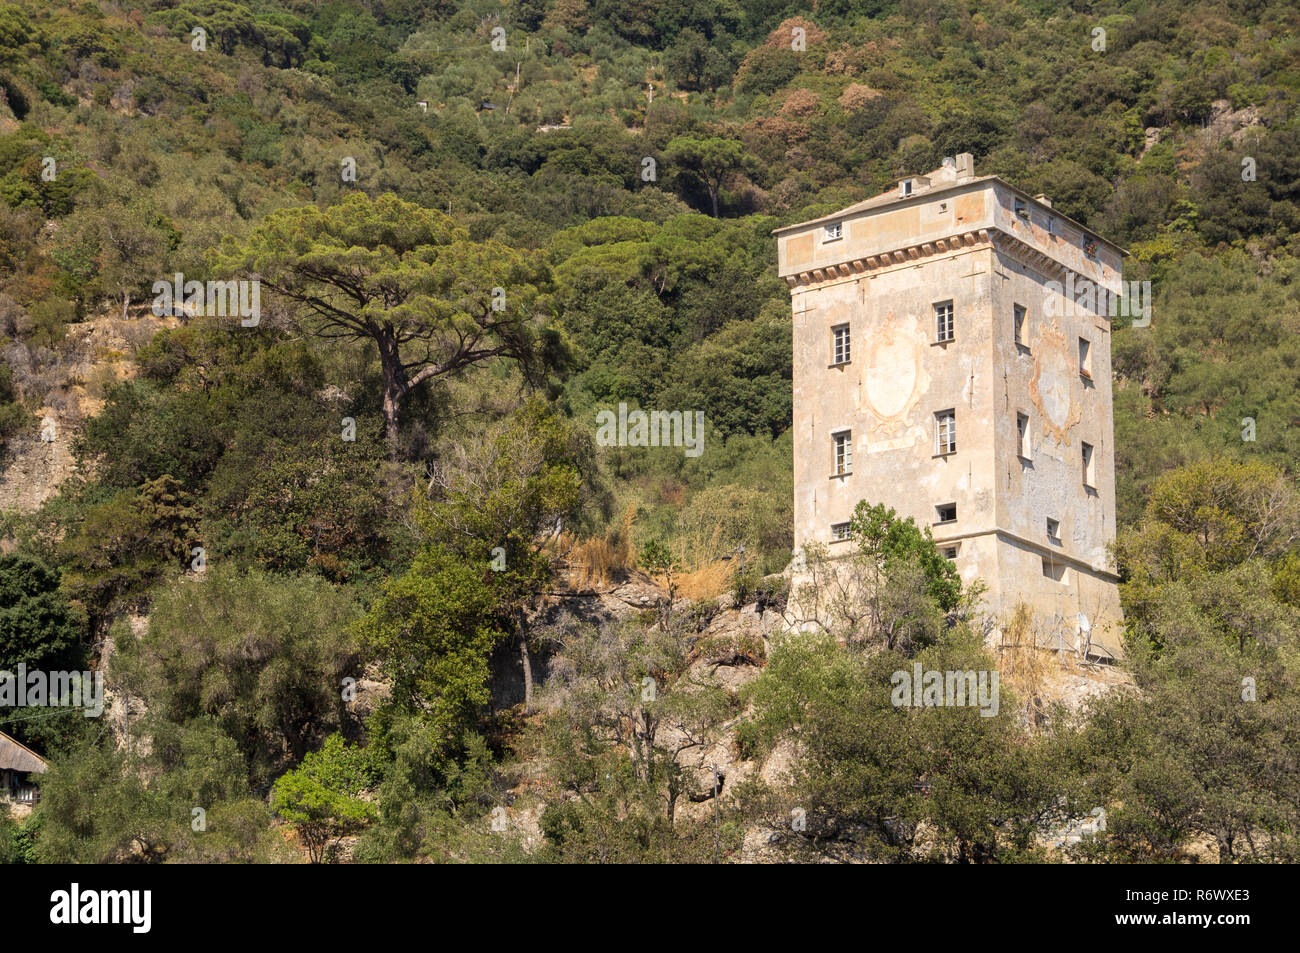 The Doria tower in San Fruttuoso Stock Photo